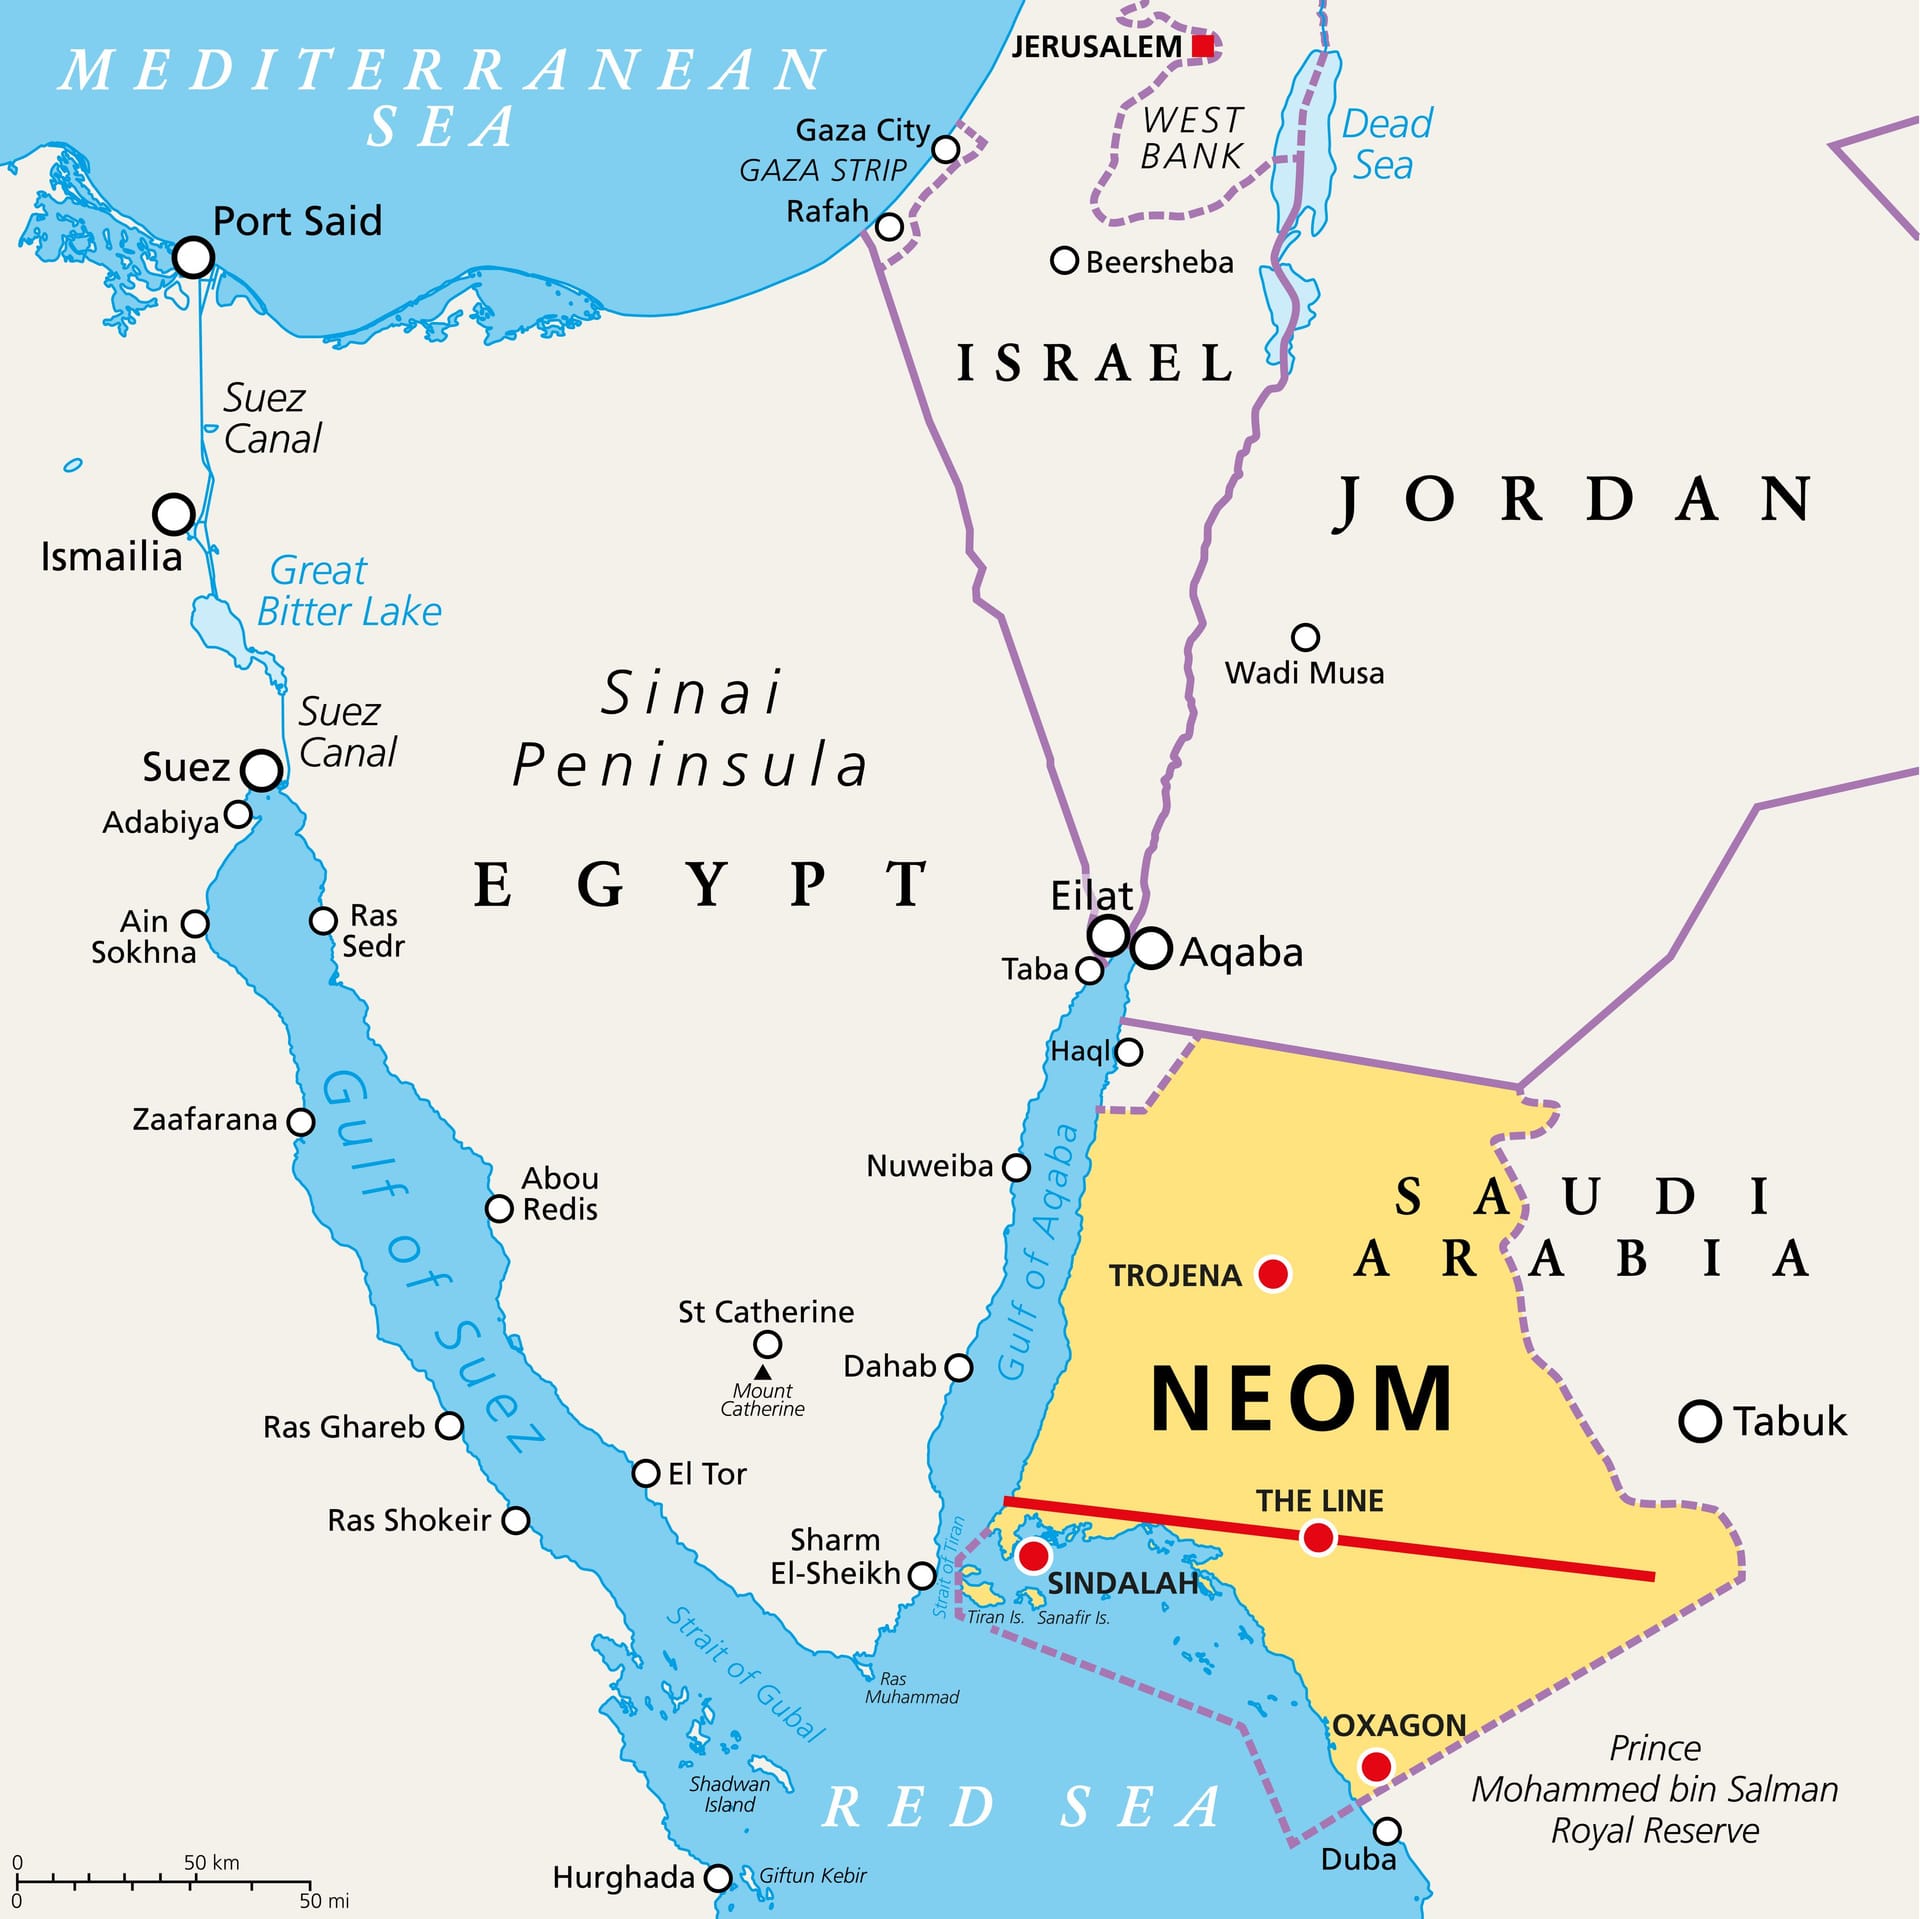 So soll "NEOM" auf der Sinai-Halbinsel umgesetzt werden.